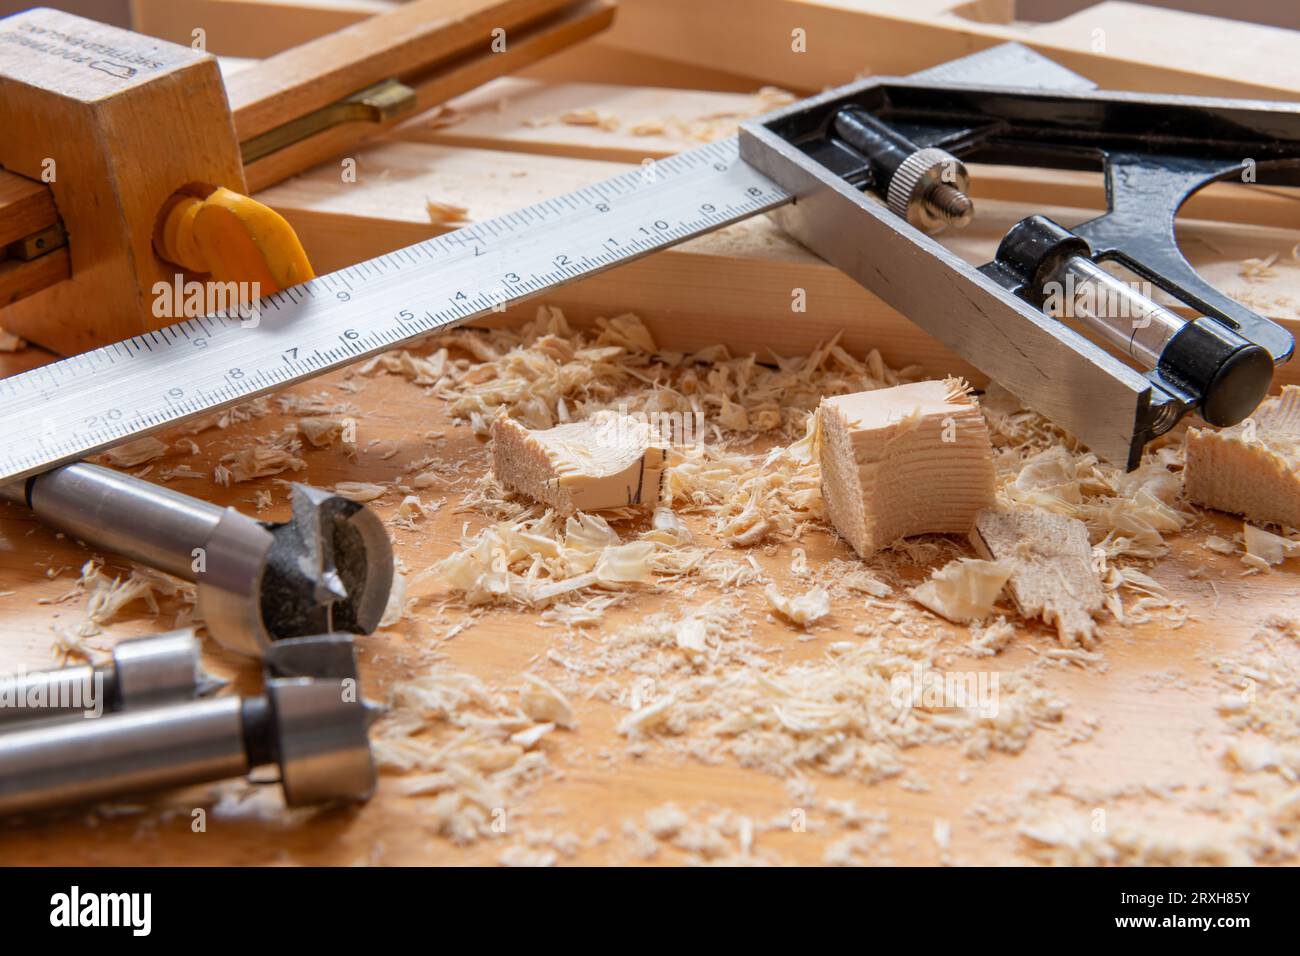 Madera, virutas de madera y herramientas de carpintería en un banco de trabajo. Foto de stock